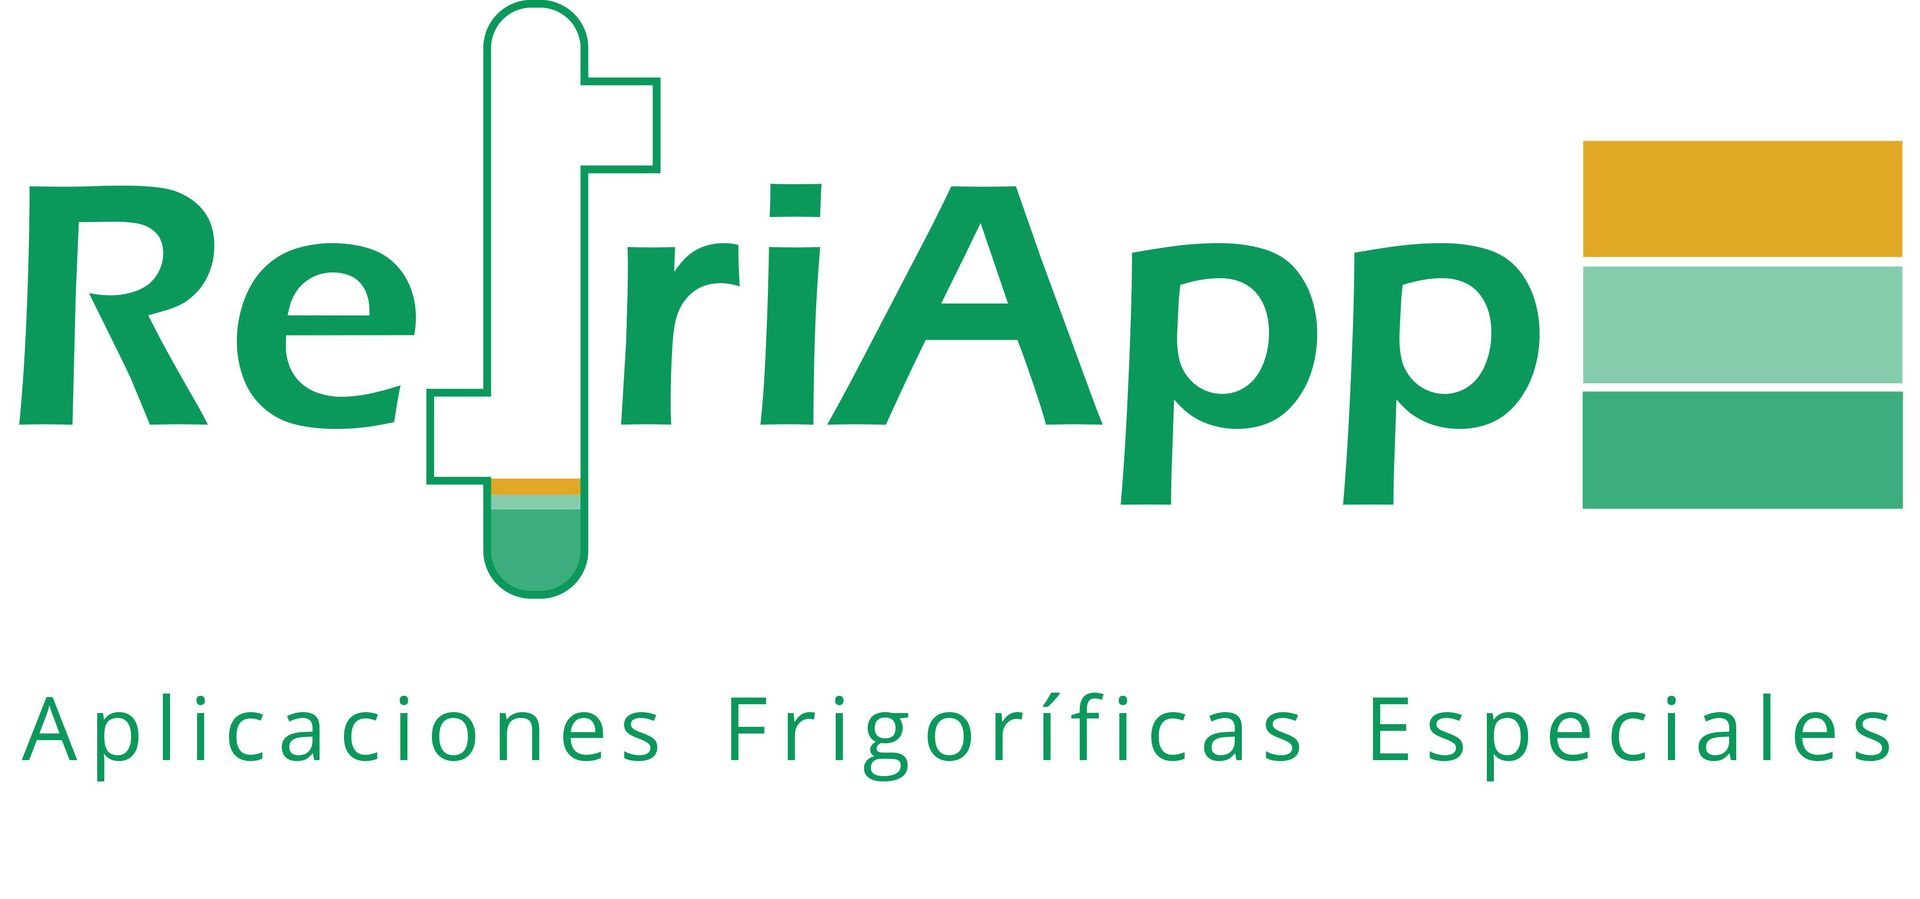 Logotipo Refriapp